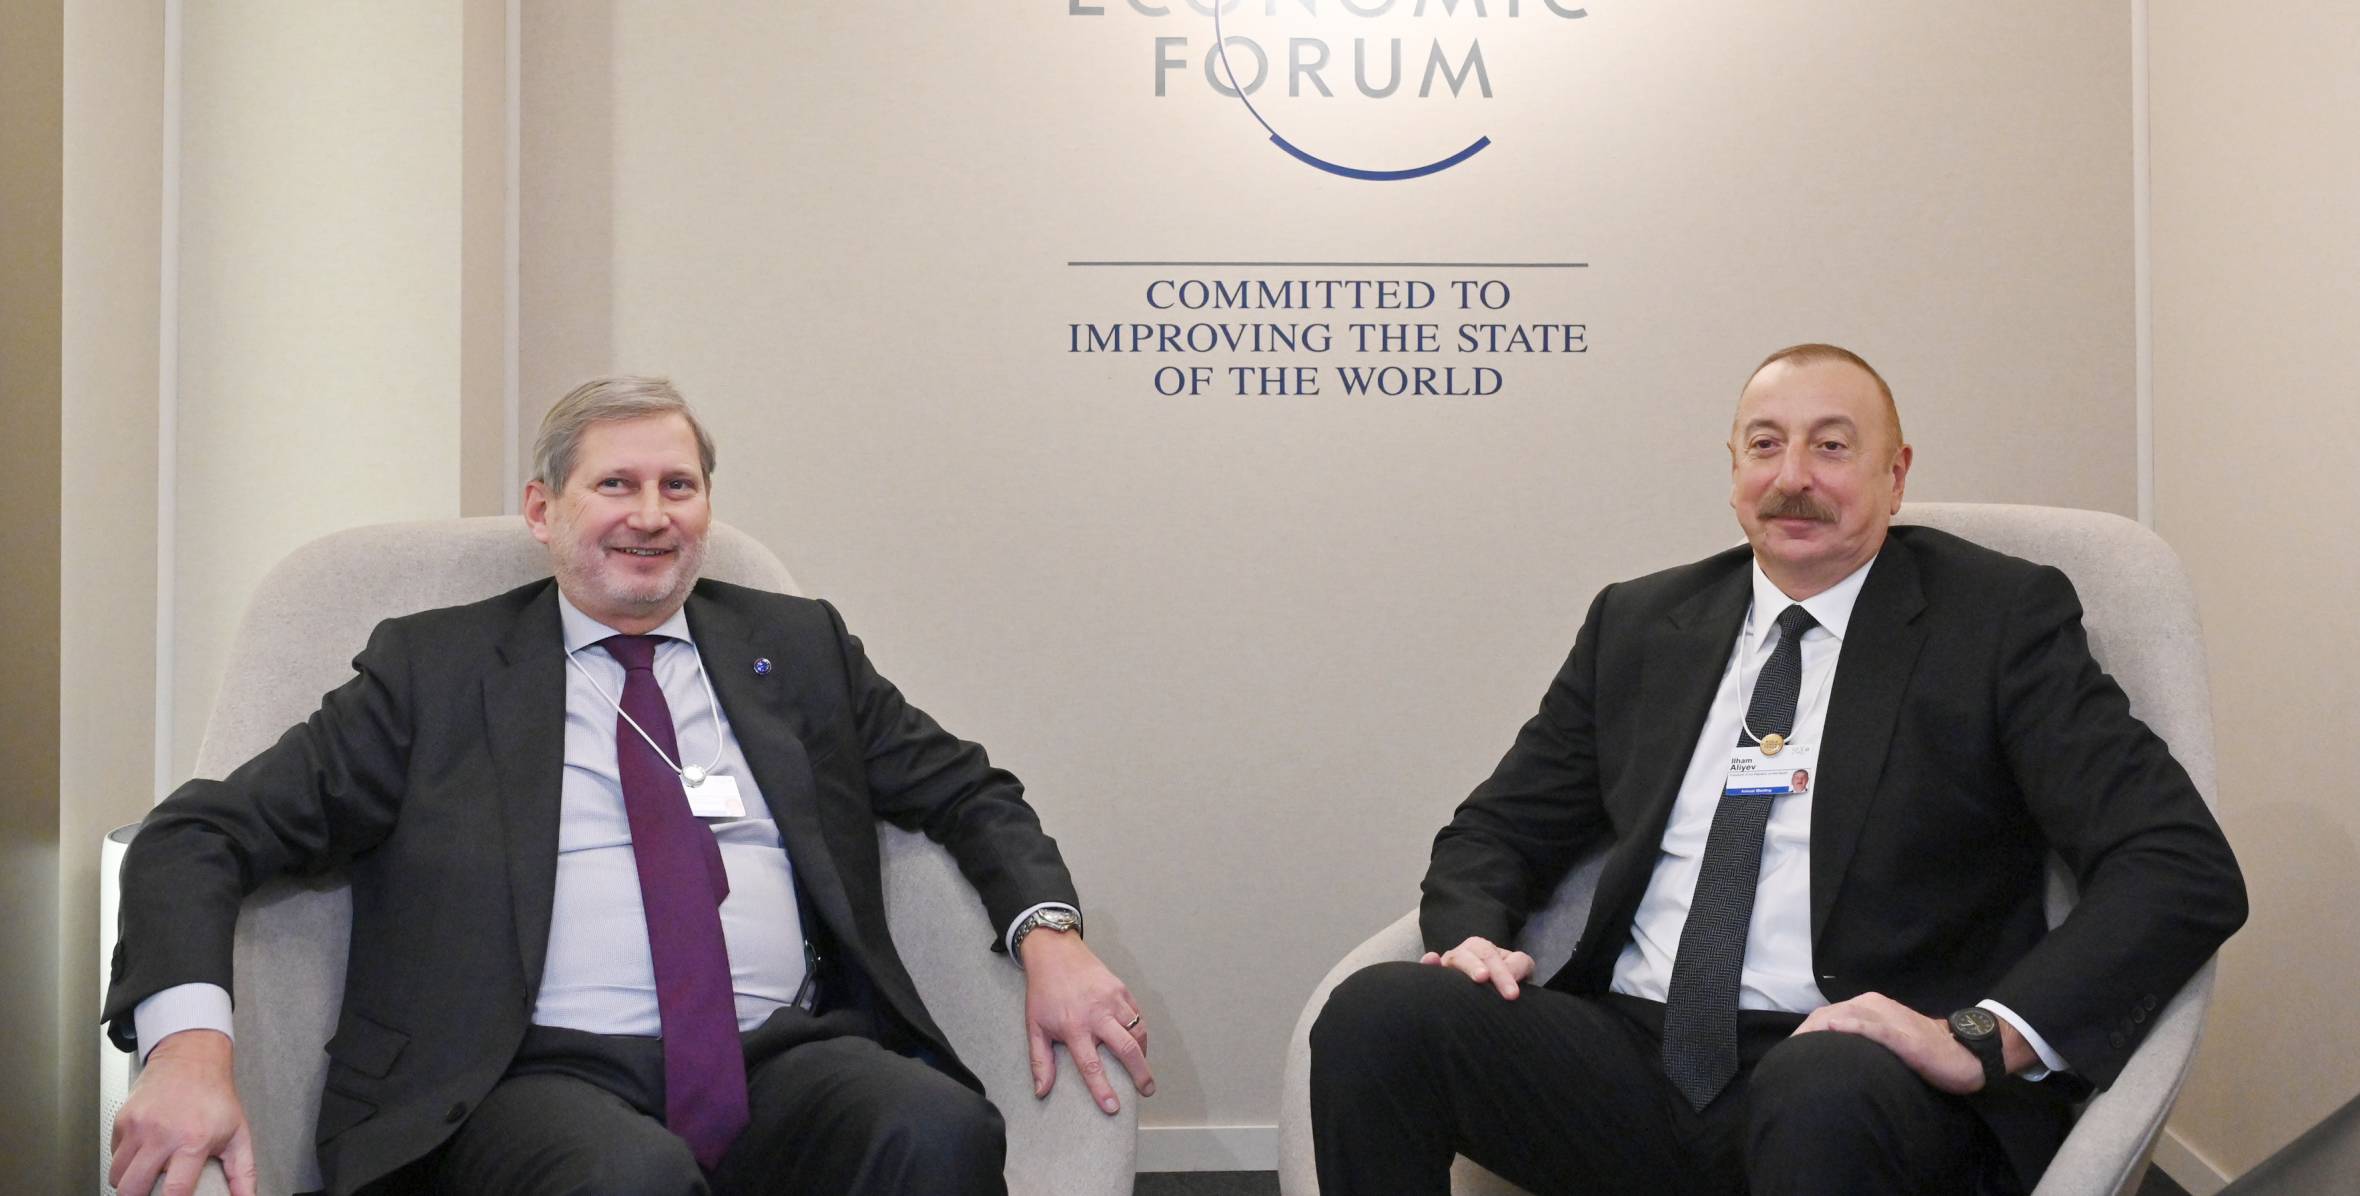 Ильхам Алиев встретился в Давосе с комиссаром ЕС по бюджету и администрации